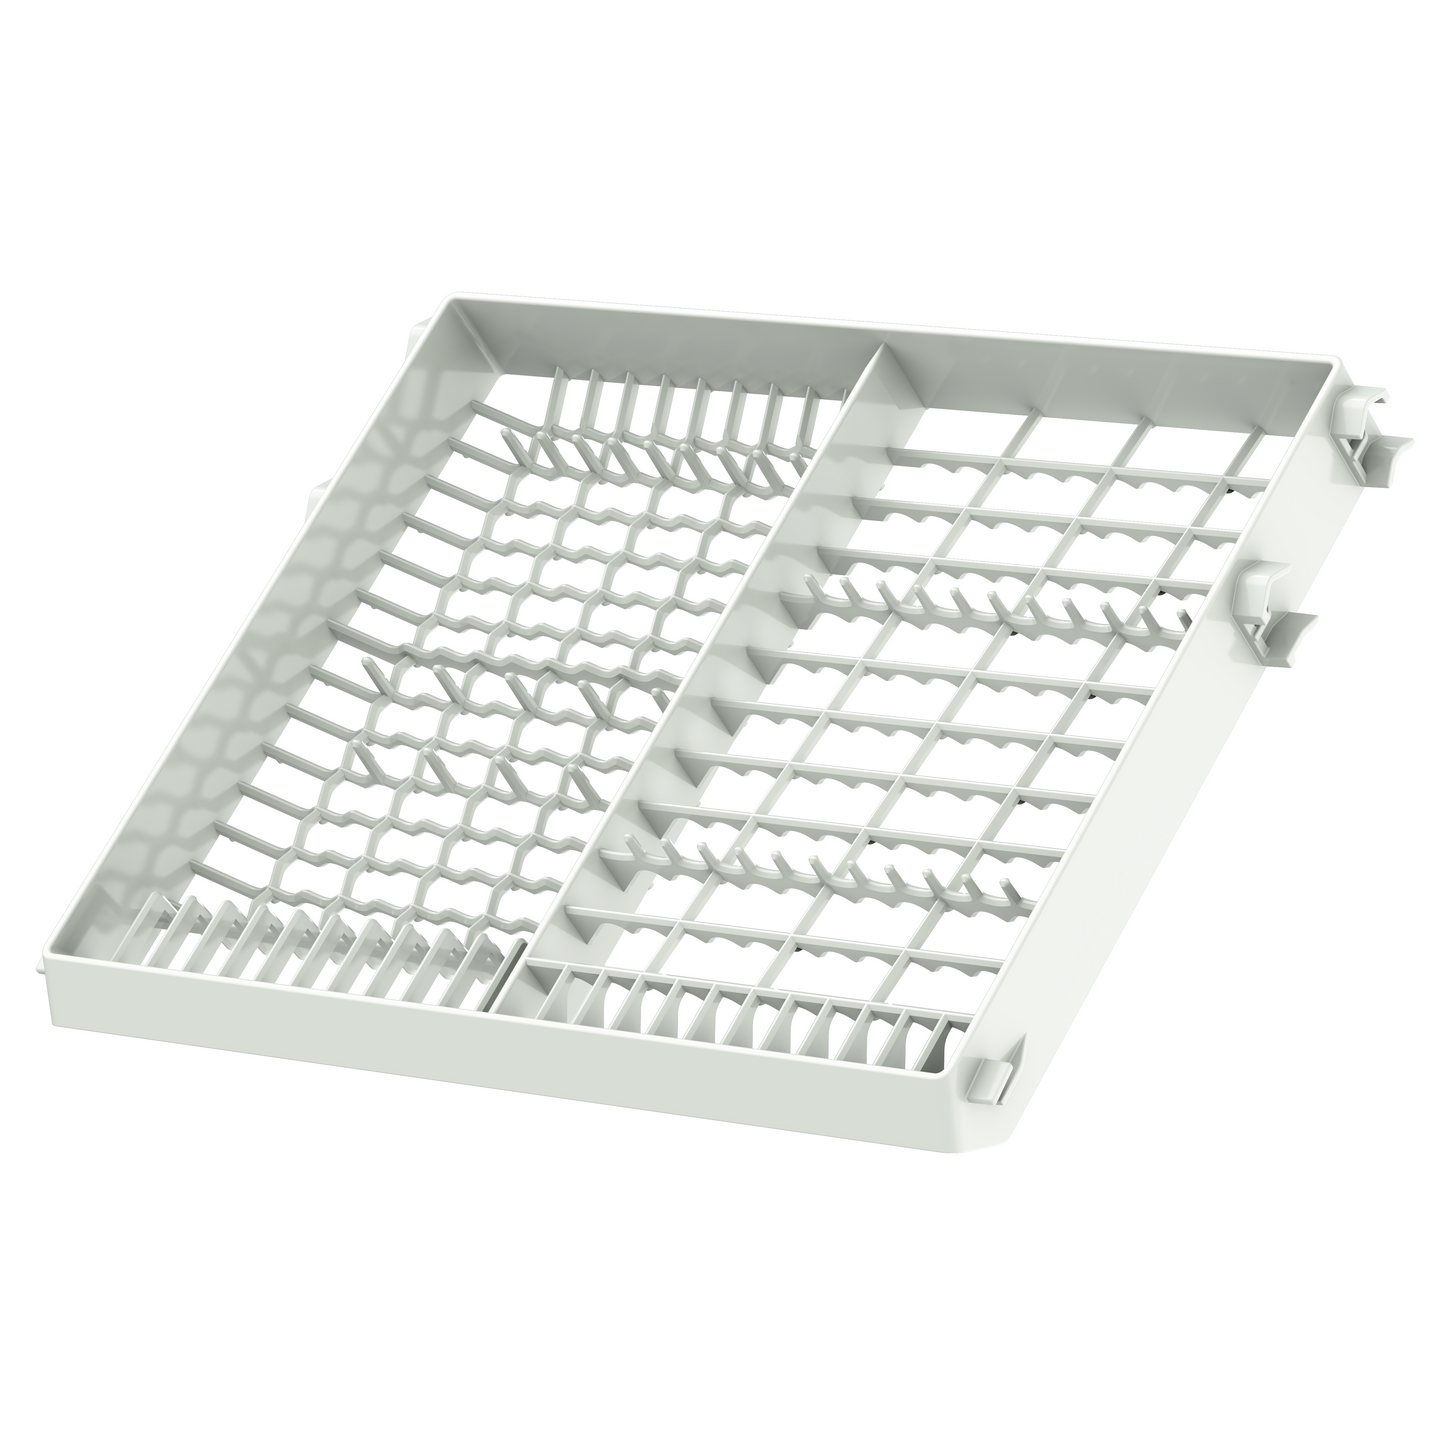 Dishwasher upper rack for TDQR03, TDQR03A